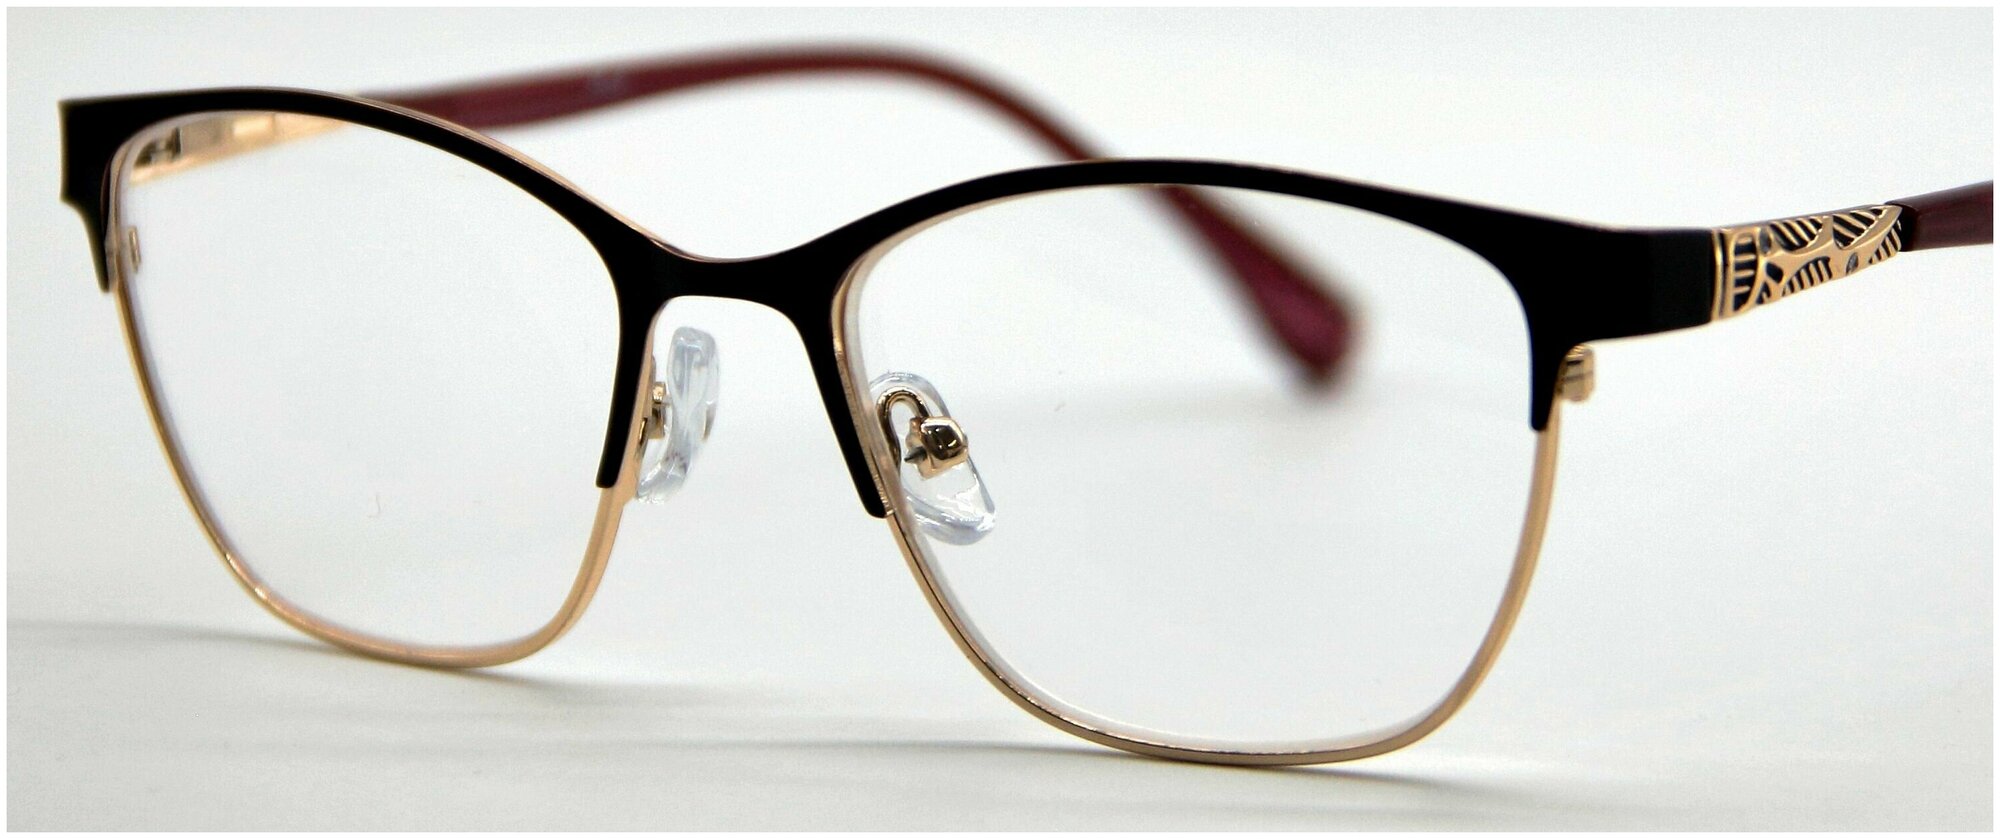 Готовые очки для зрения Marcello GA0350 C4 с диоптриями +3 /Очки женские корректирующие/Оправа металл/Флексовое крепление дужек/Футляр в комплекте